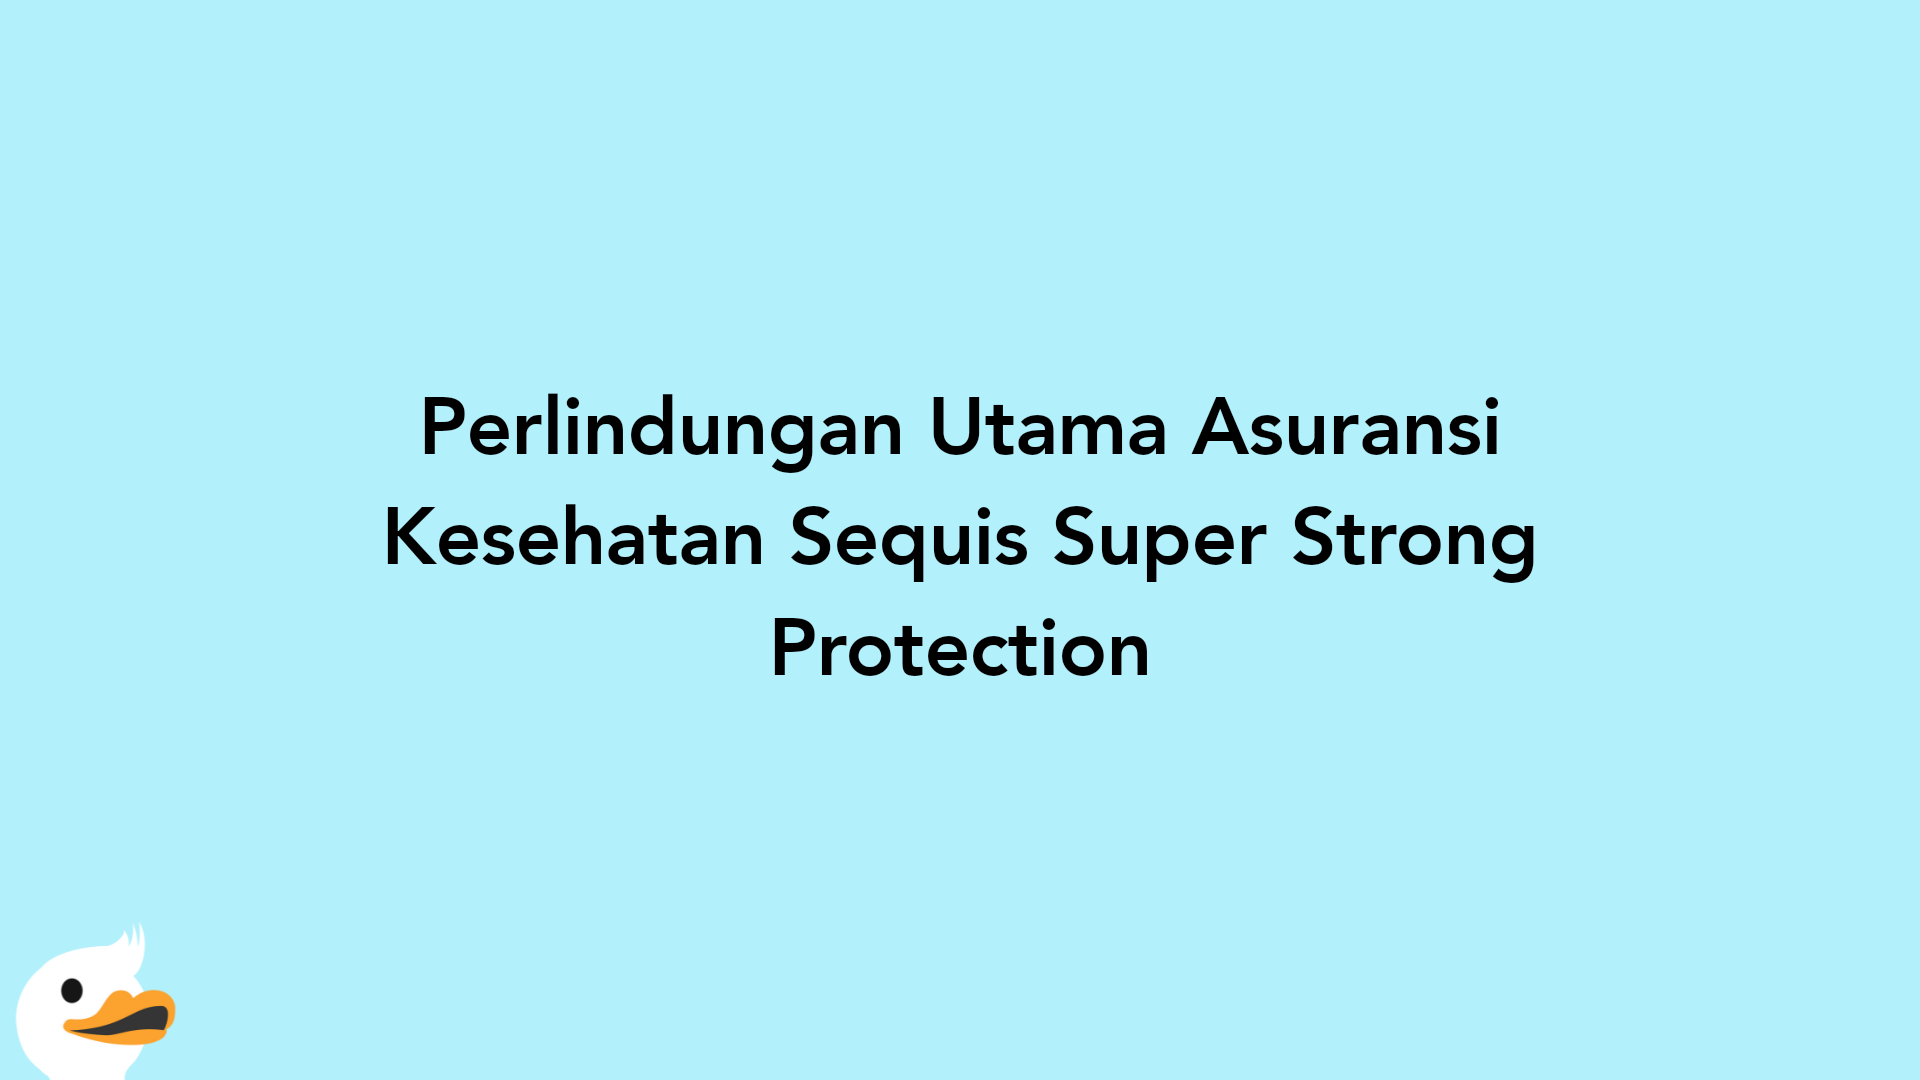 Perlindungan Utama Asuransi Kesehatan Sequis Super Strong Protection